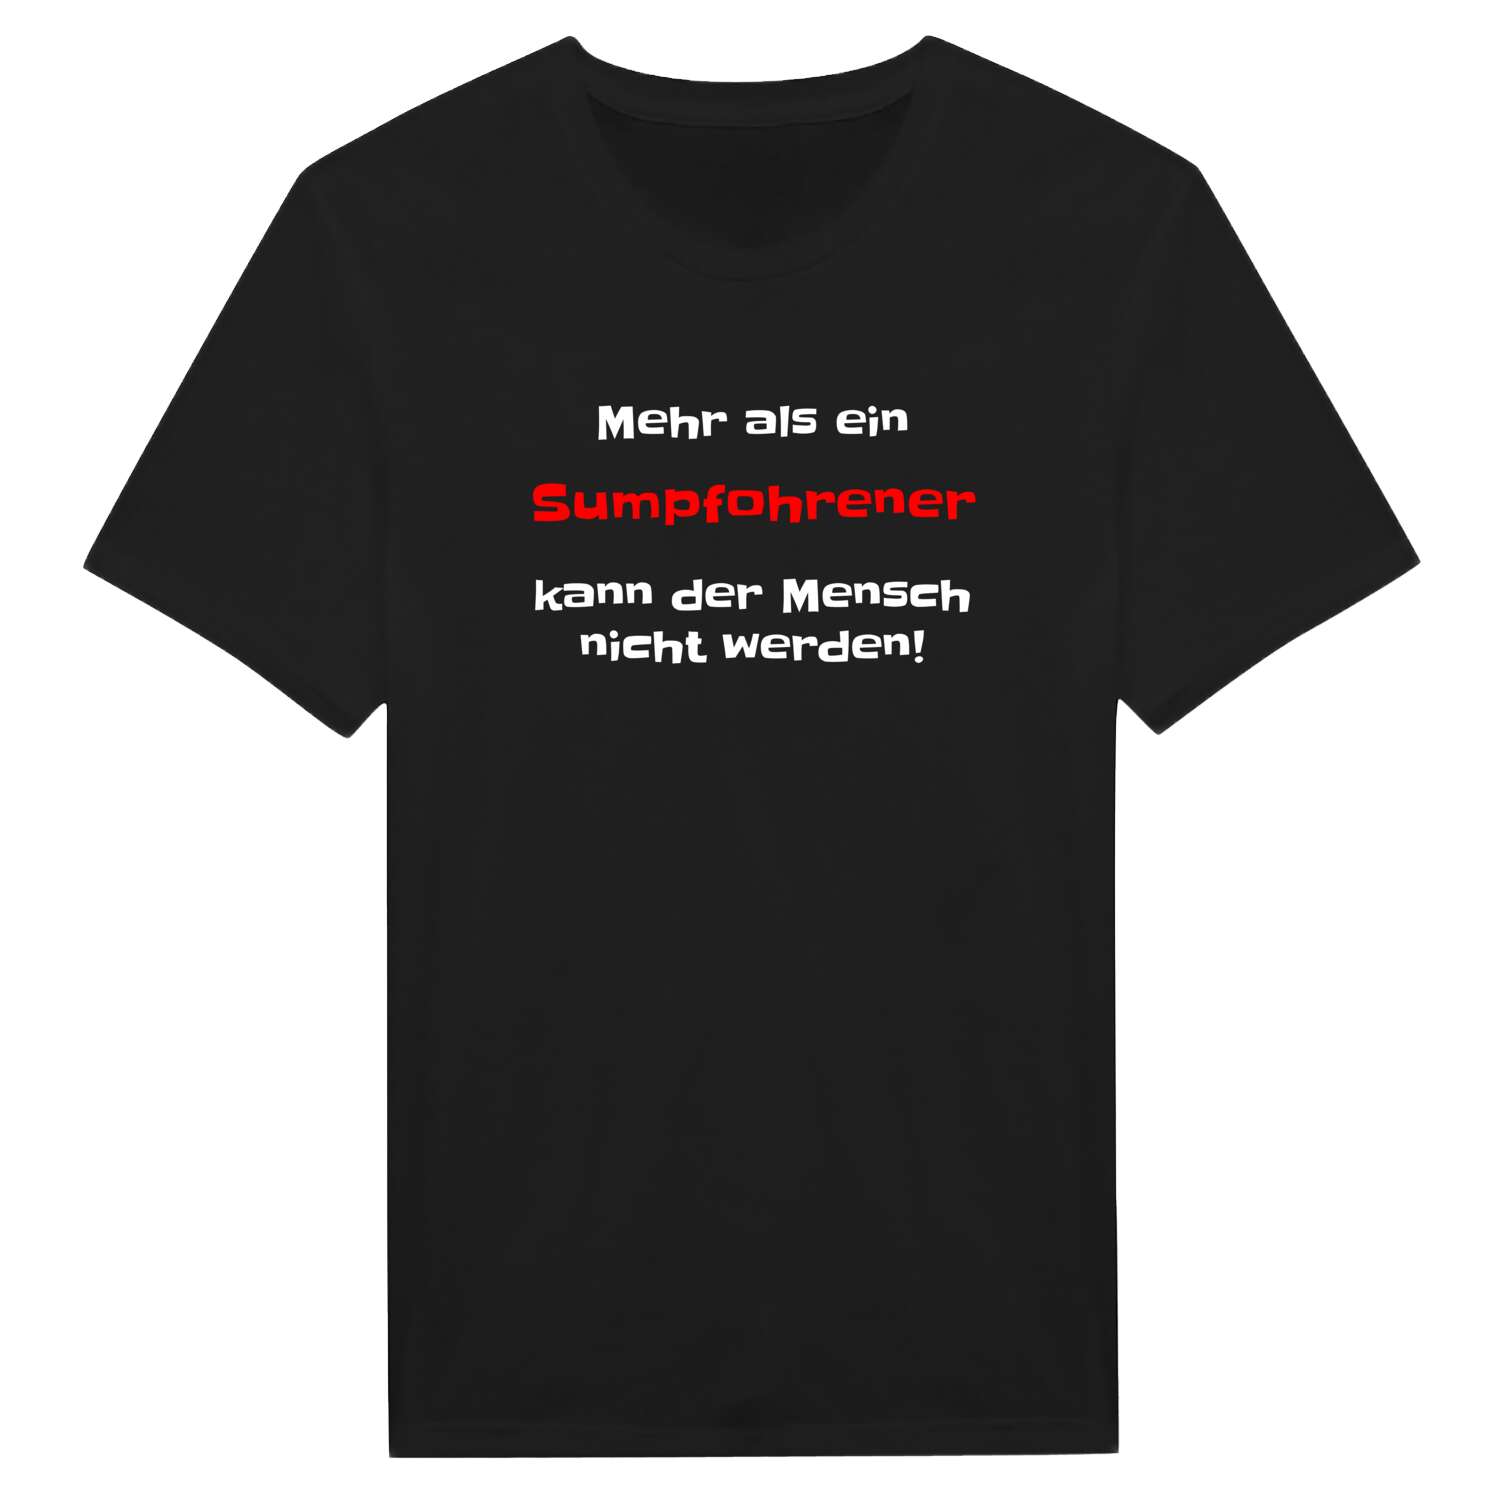 Sumpfohren T-Shirt »Mehr als ein«